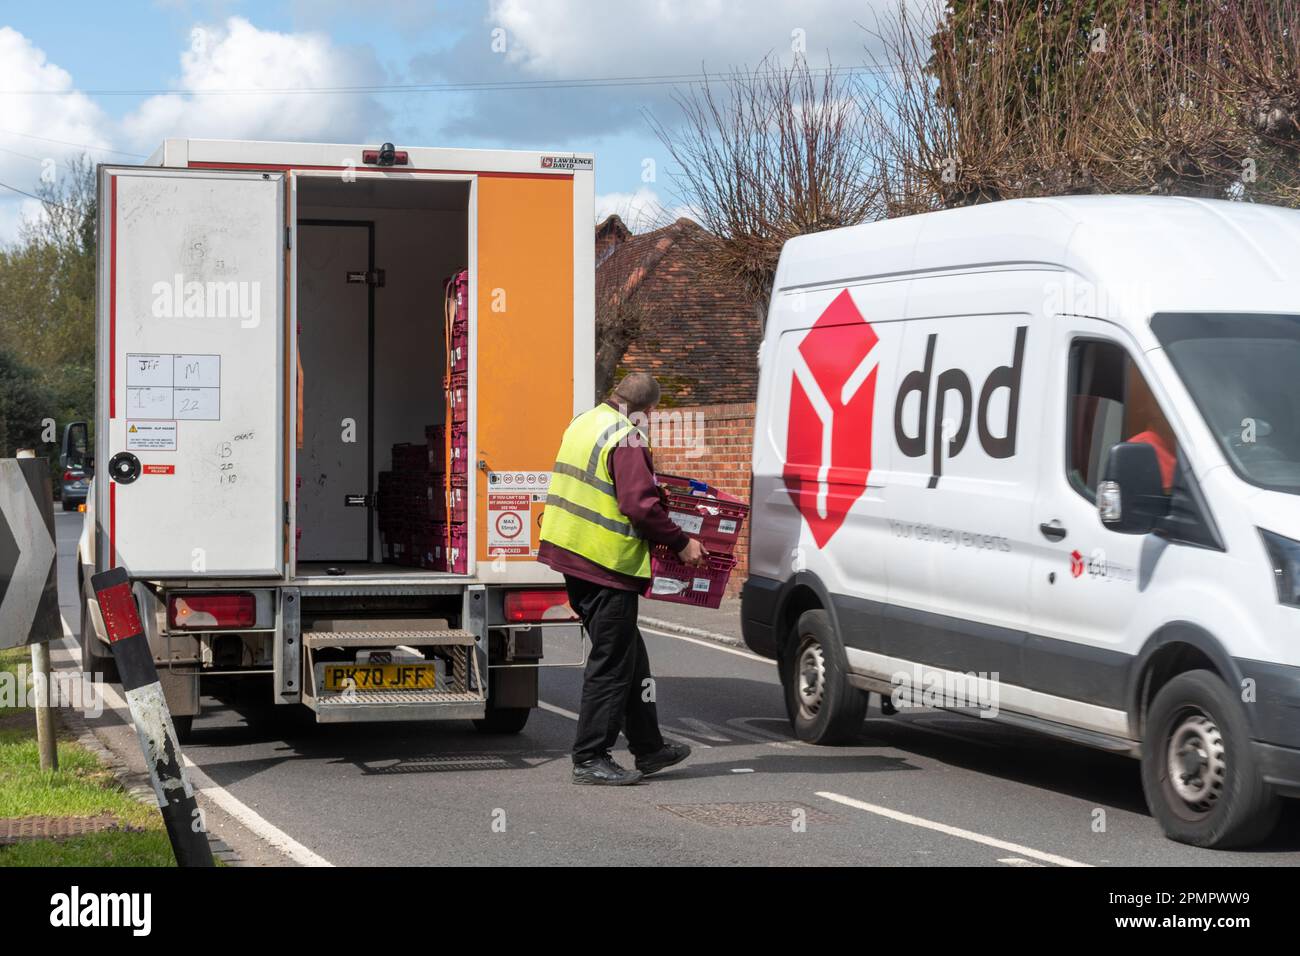 Une fourgonnette de livraison de Sainsbury garé avec le chauffeur livrant des provisions à la maison, tandis qu'une camionnette DPD passe devant, Angleterre, Royaume-Uni Banque D'Images